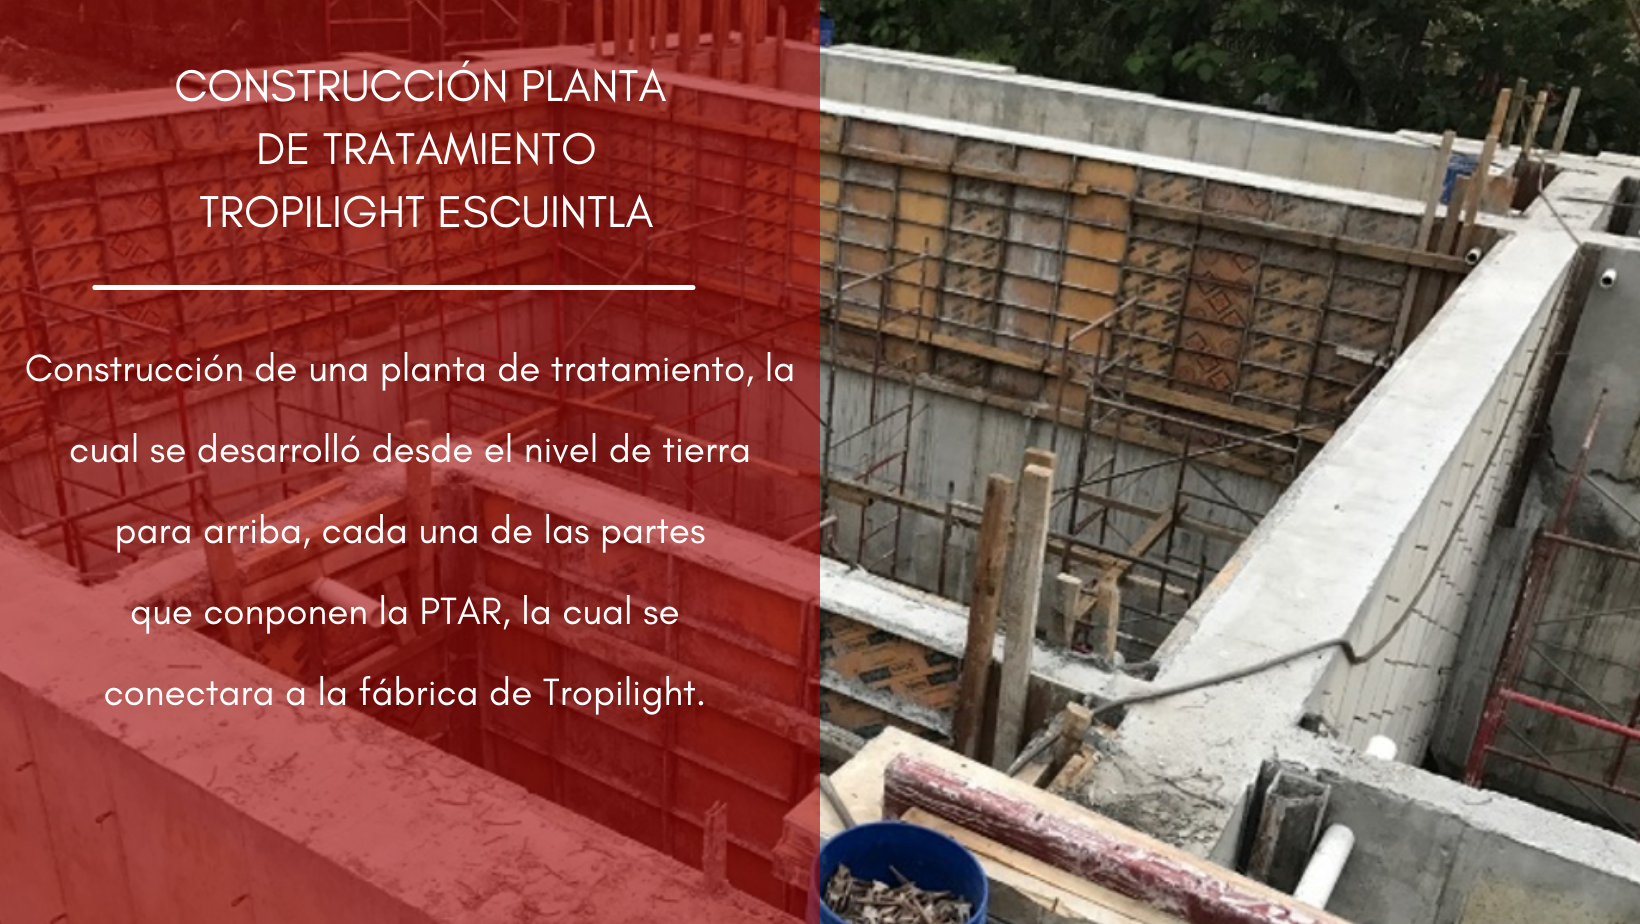 CONSTRUCCIÓN PLANTA DE TRATAMIENTO TROPILIGHT ESCUINTLA